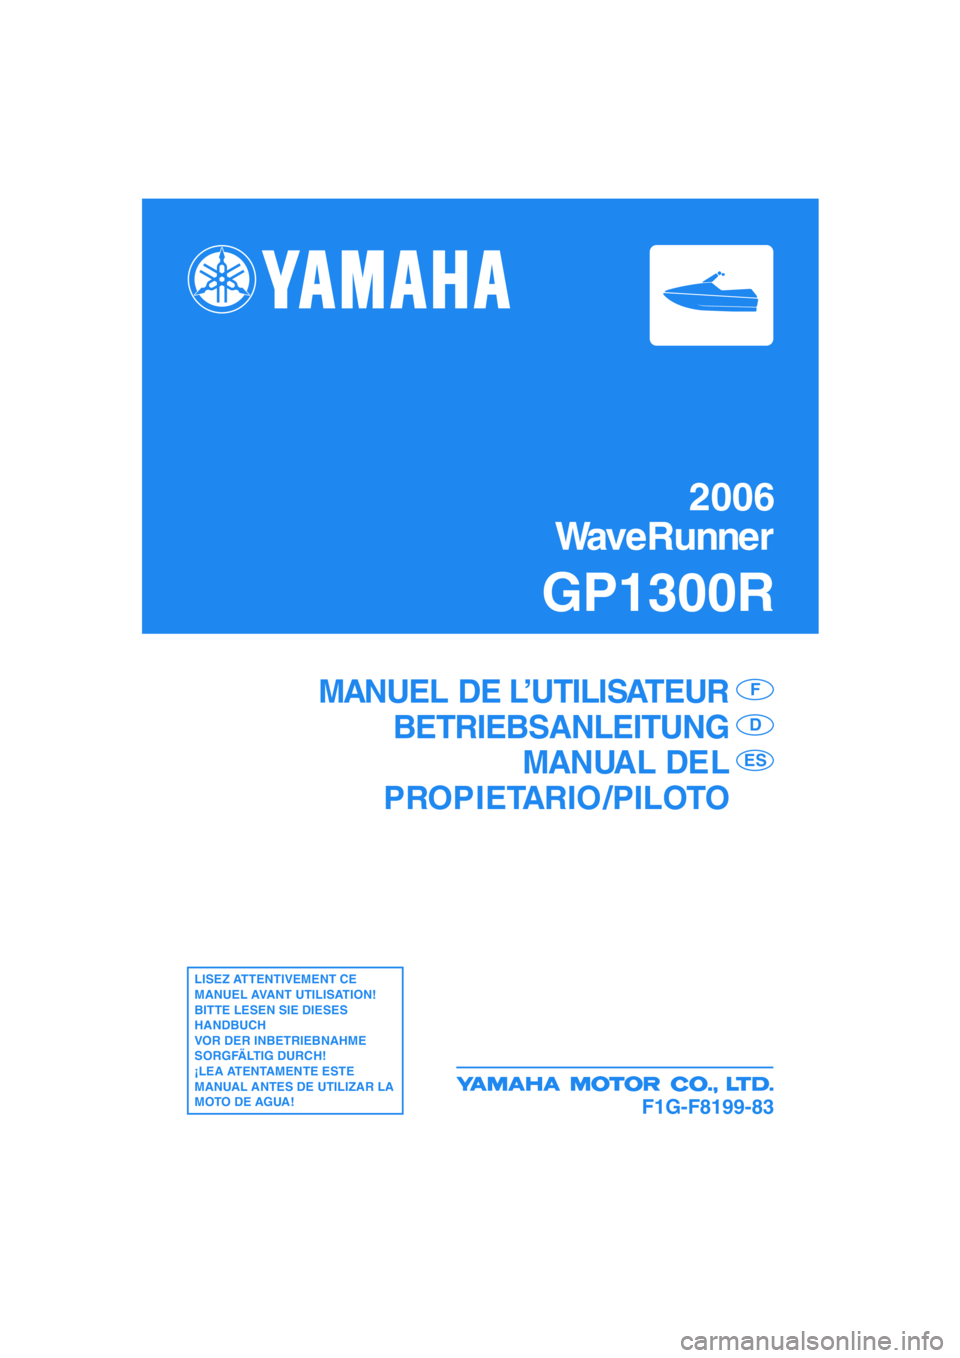 YAMAHA GP1300R 2006  Notices Demploi (in French) 2006
WaveRunner
GP1300R
F1G-F8199-83
MANUEL DE L’UTILISATEUR
BETRIEBSANLEITUNG
MANUAL DEL
PROPIETARIO /PILOTOF
D
ES
LISEZ ATTENTIVEMENT CE 
MANUEL AVANT UTILISATION!
BITTE LESEN SIE DIESES 
HANDBUCH